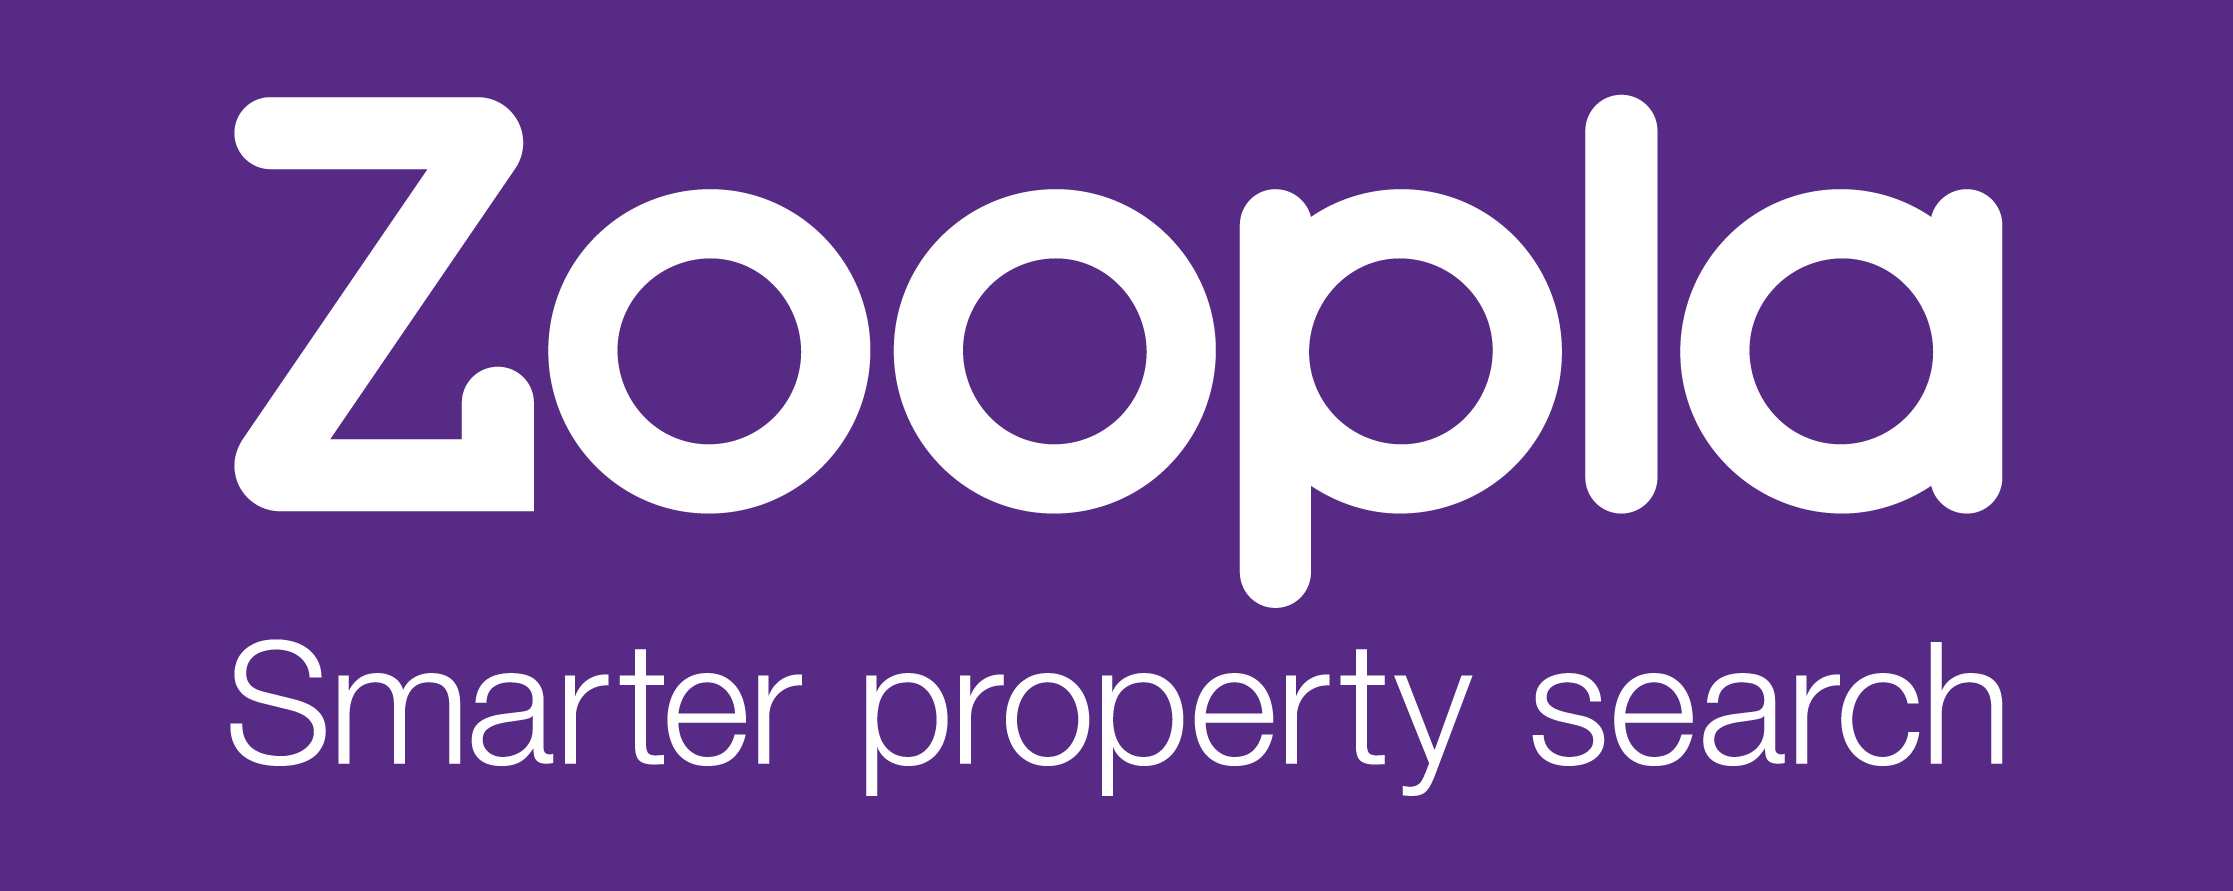 zoopla_wo_logo-01